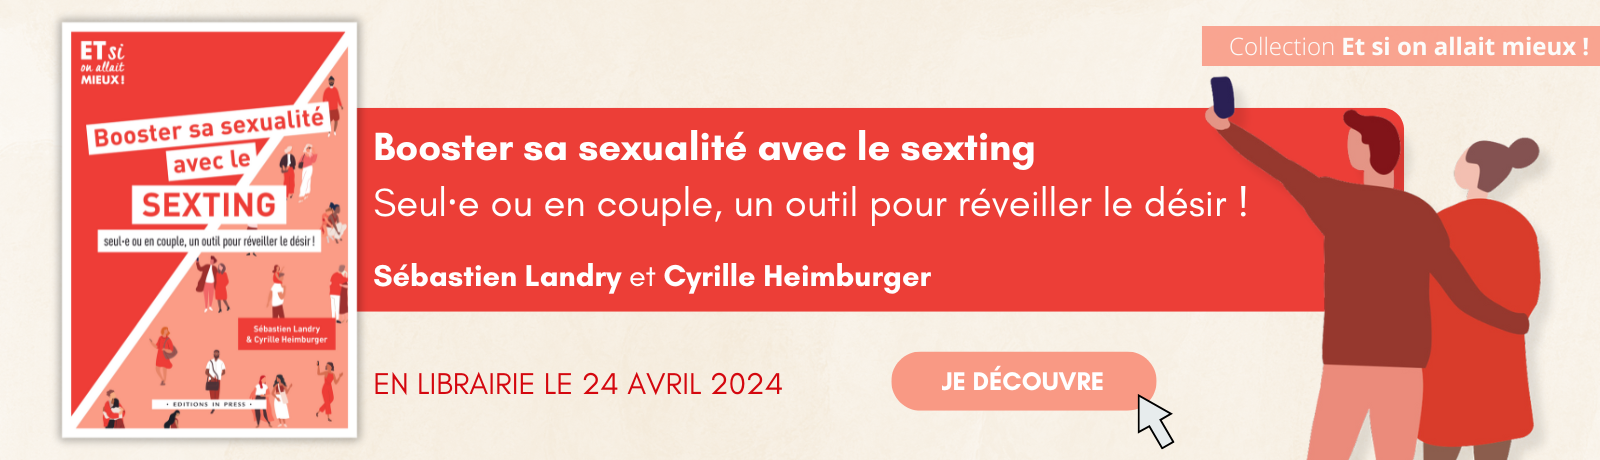 Bannière Sexting